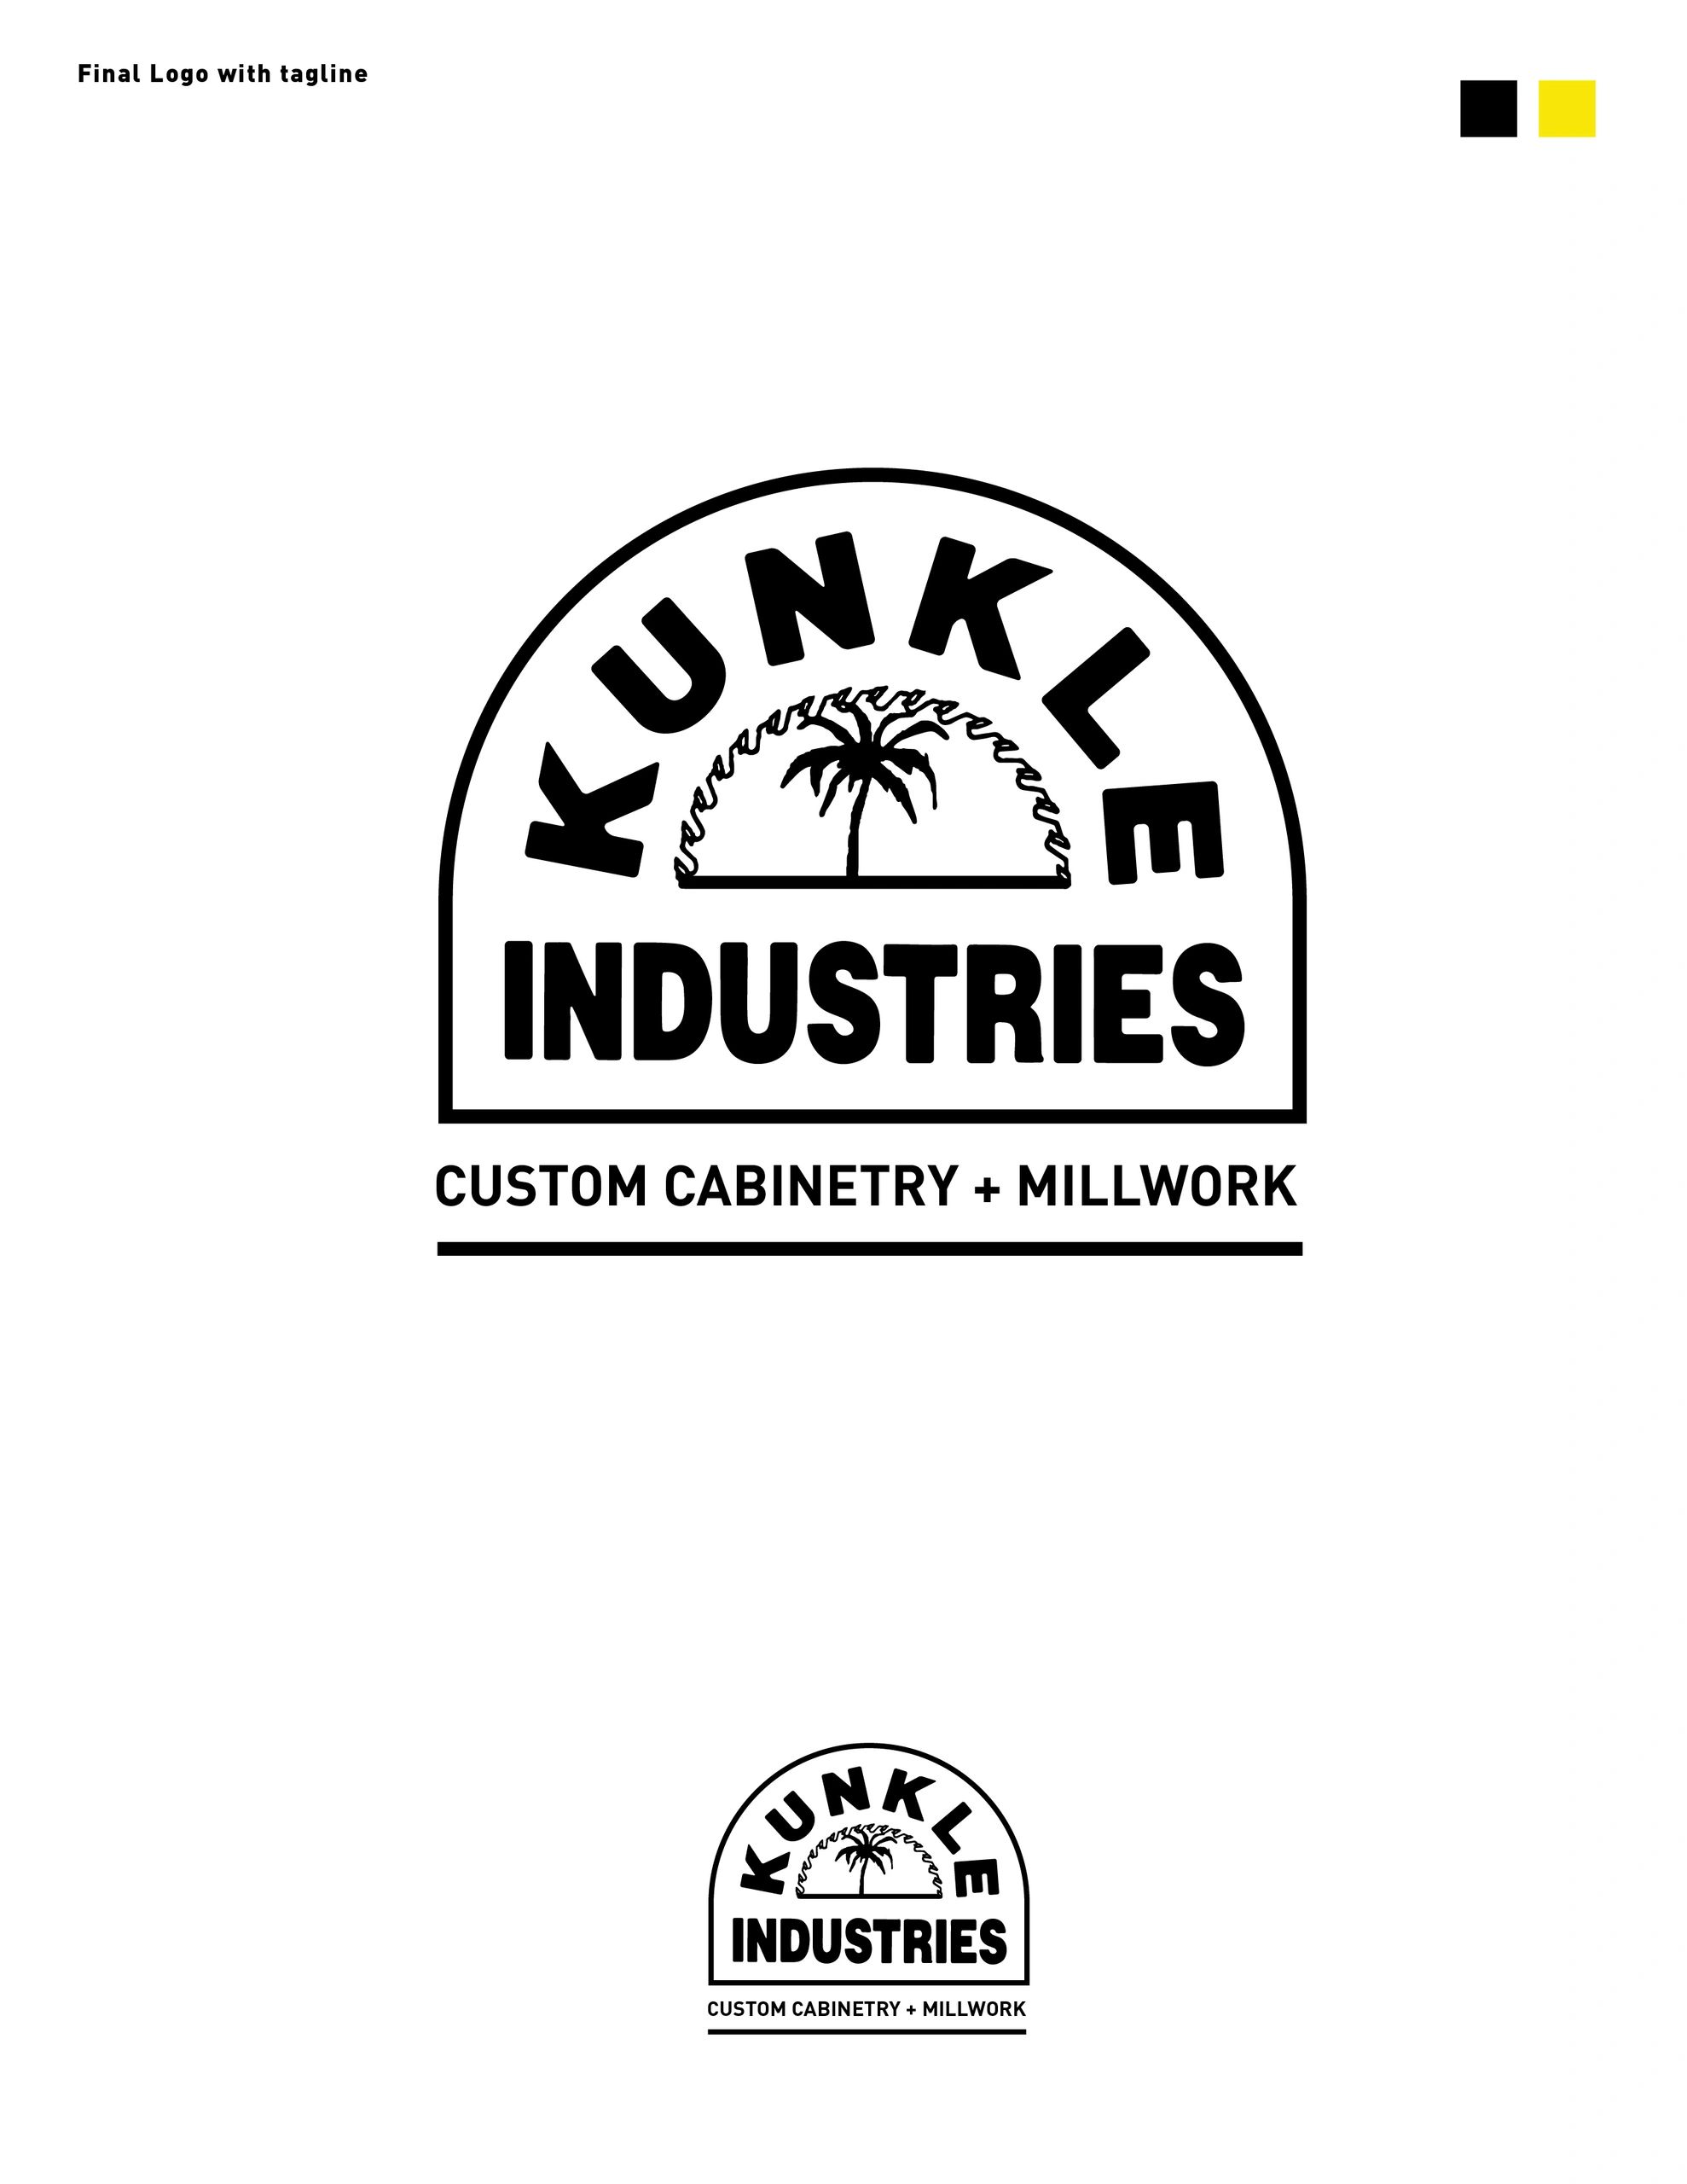 (c) Kunkleindustries.com